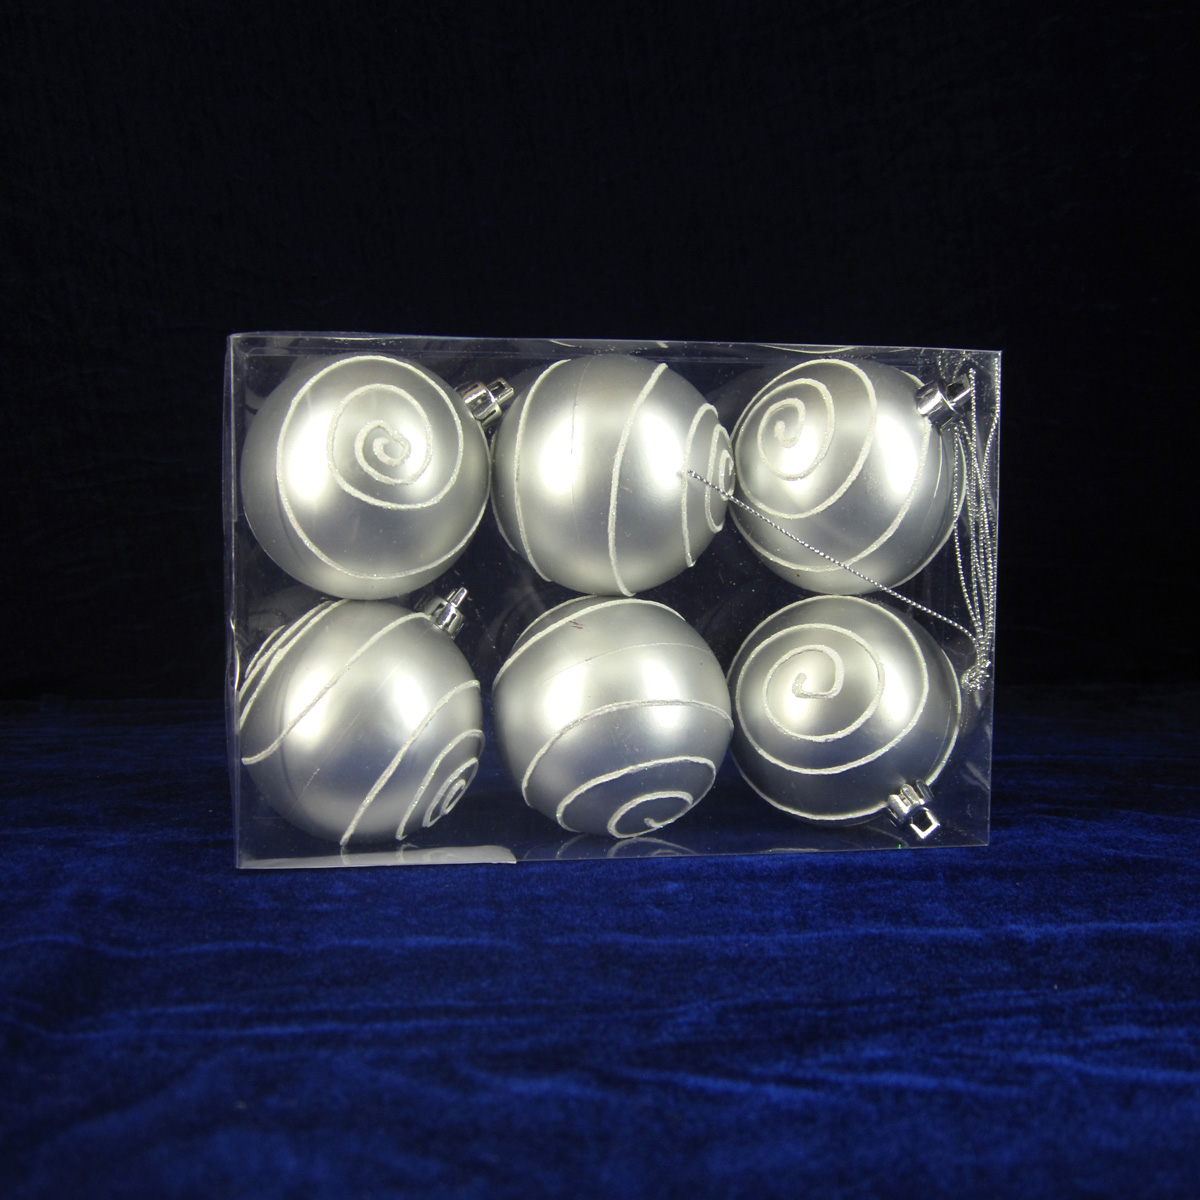 Excelente qualidade plástico Xmas ornamento bola decorativa